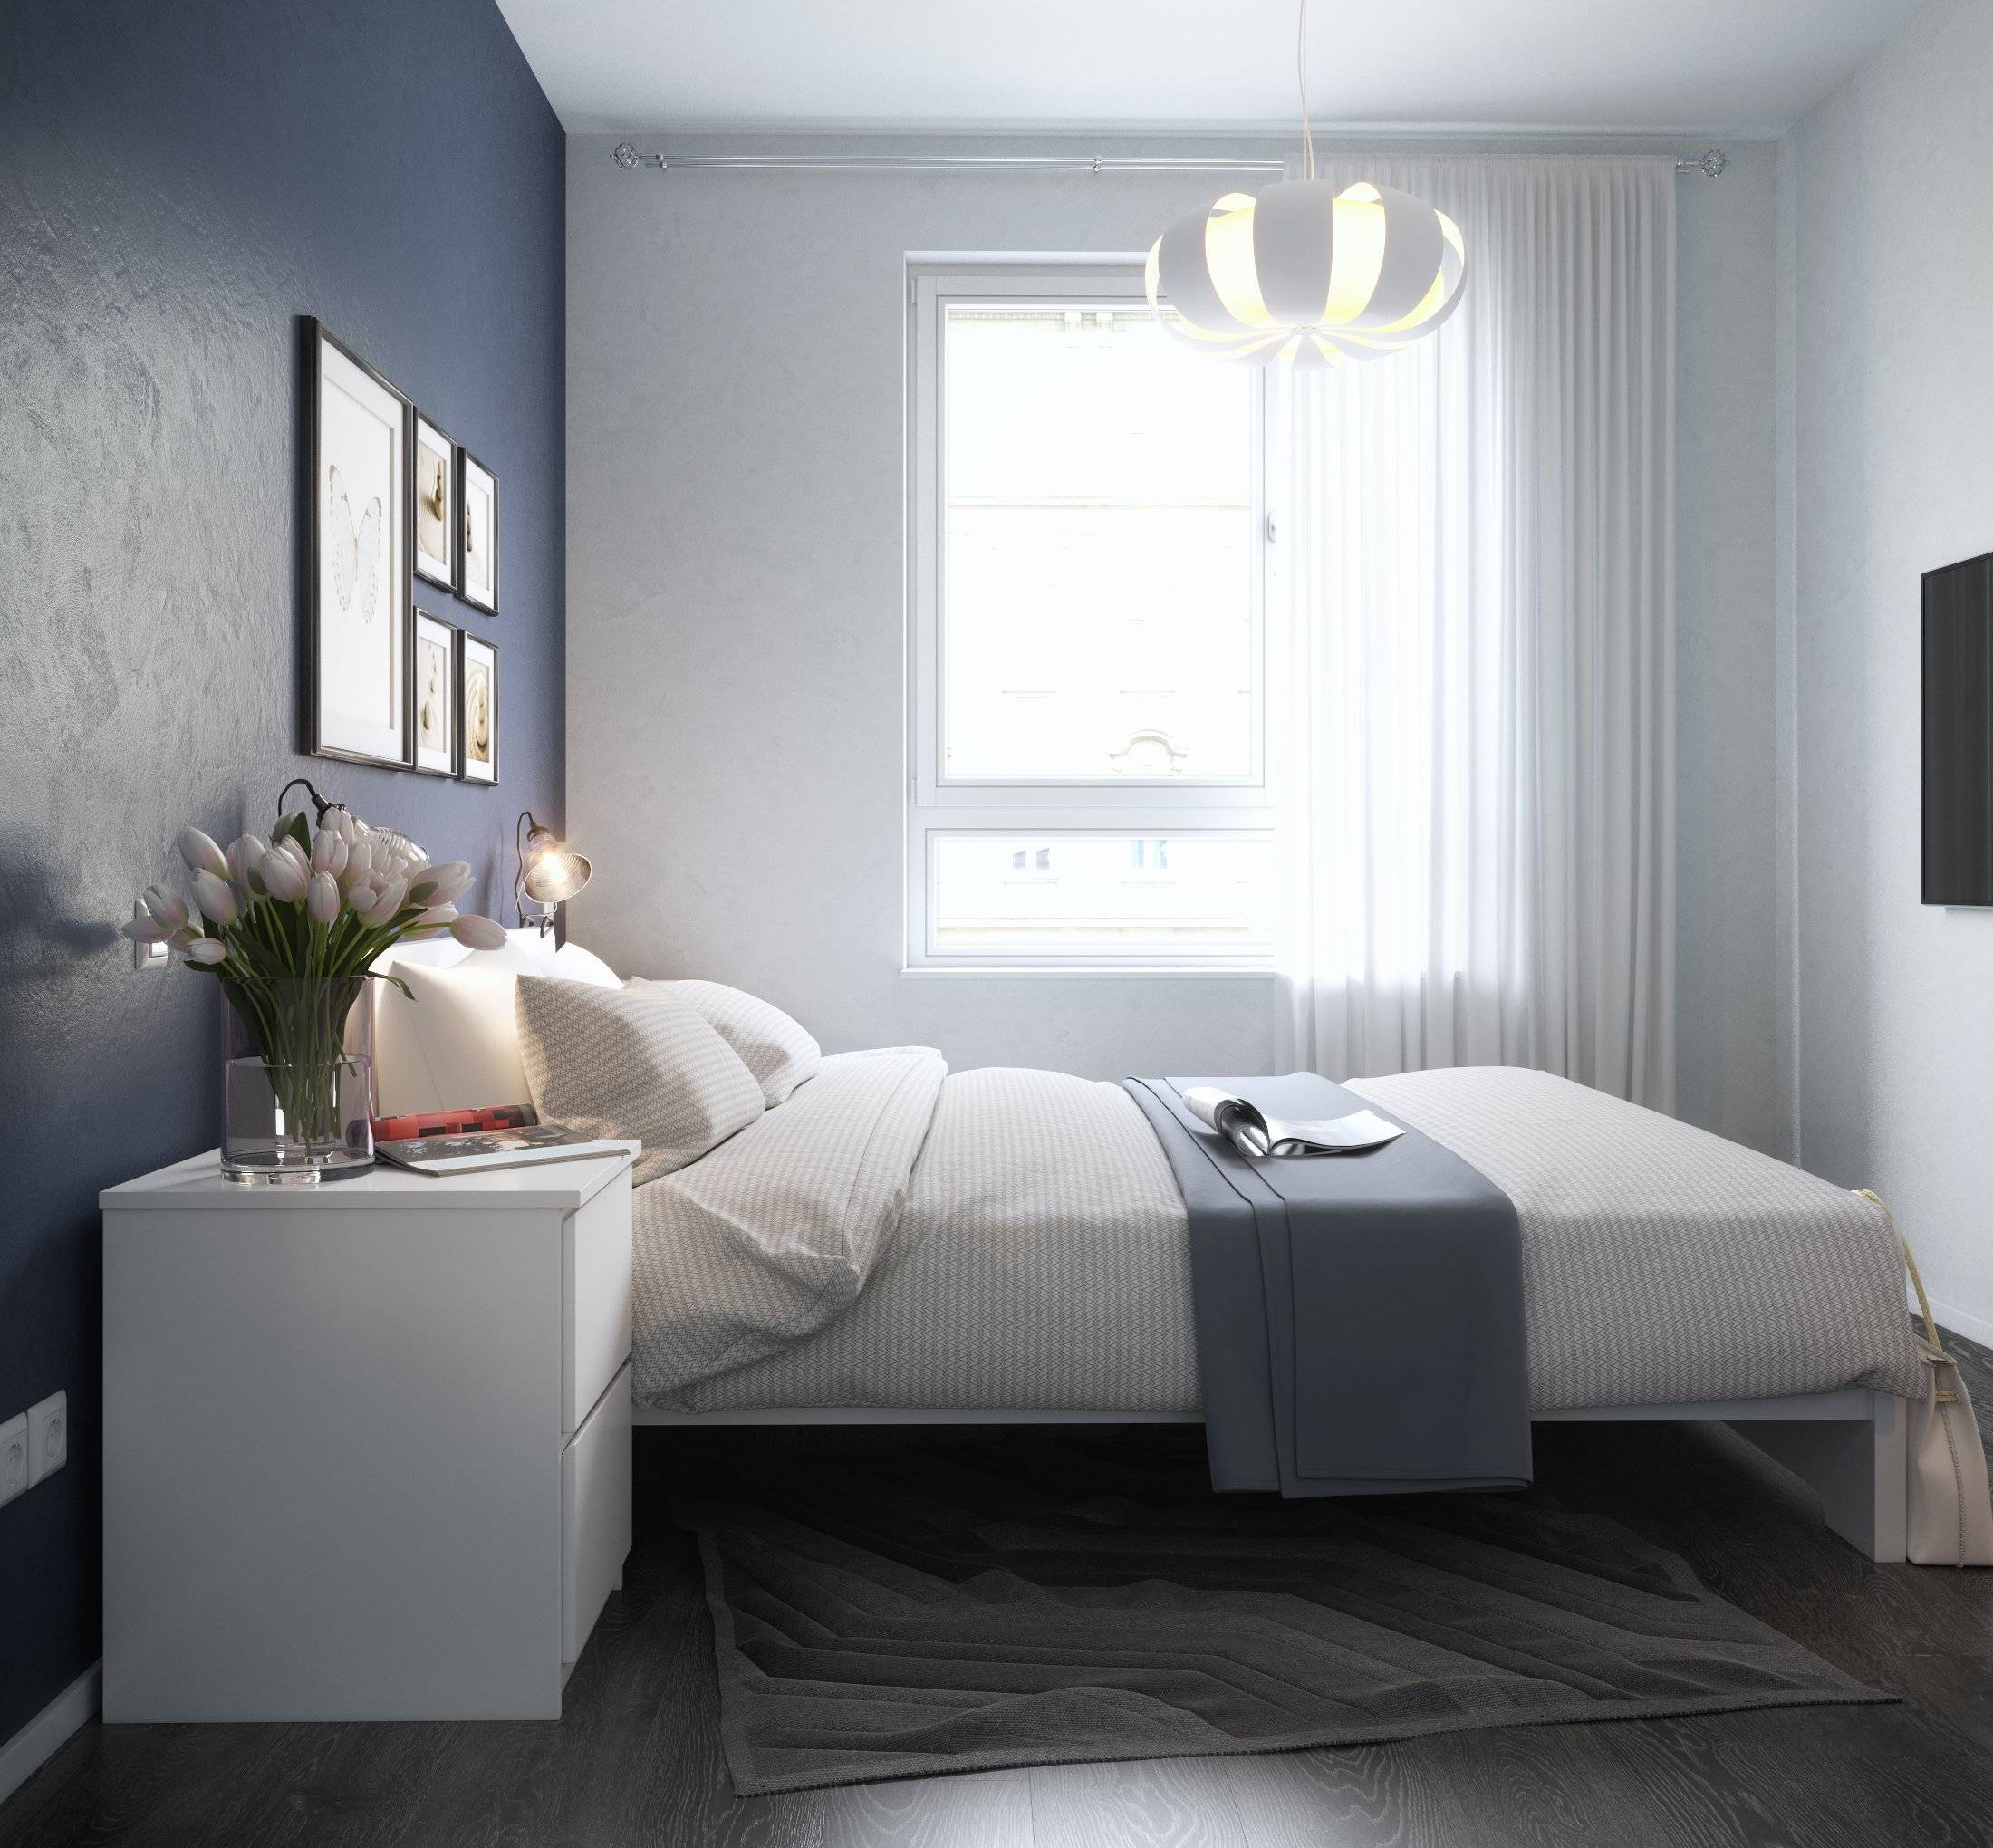 Спальни икеа: 170 фото и видео описание как выбрать дизайн спальни. лучшие решения от производителя!